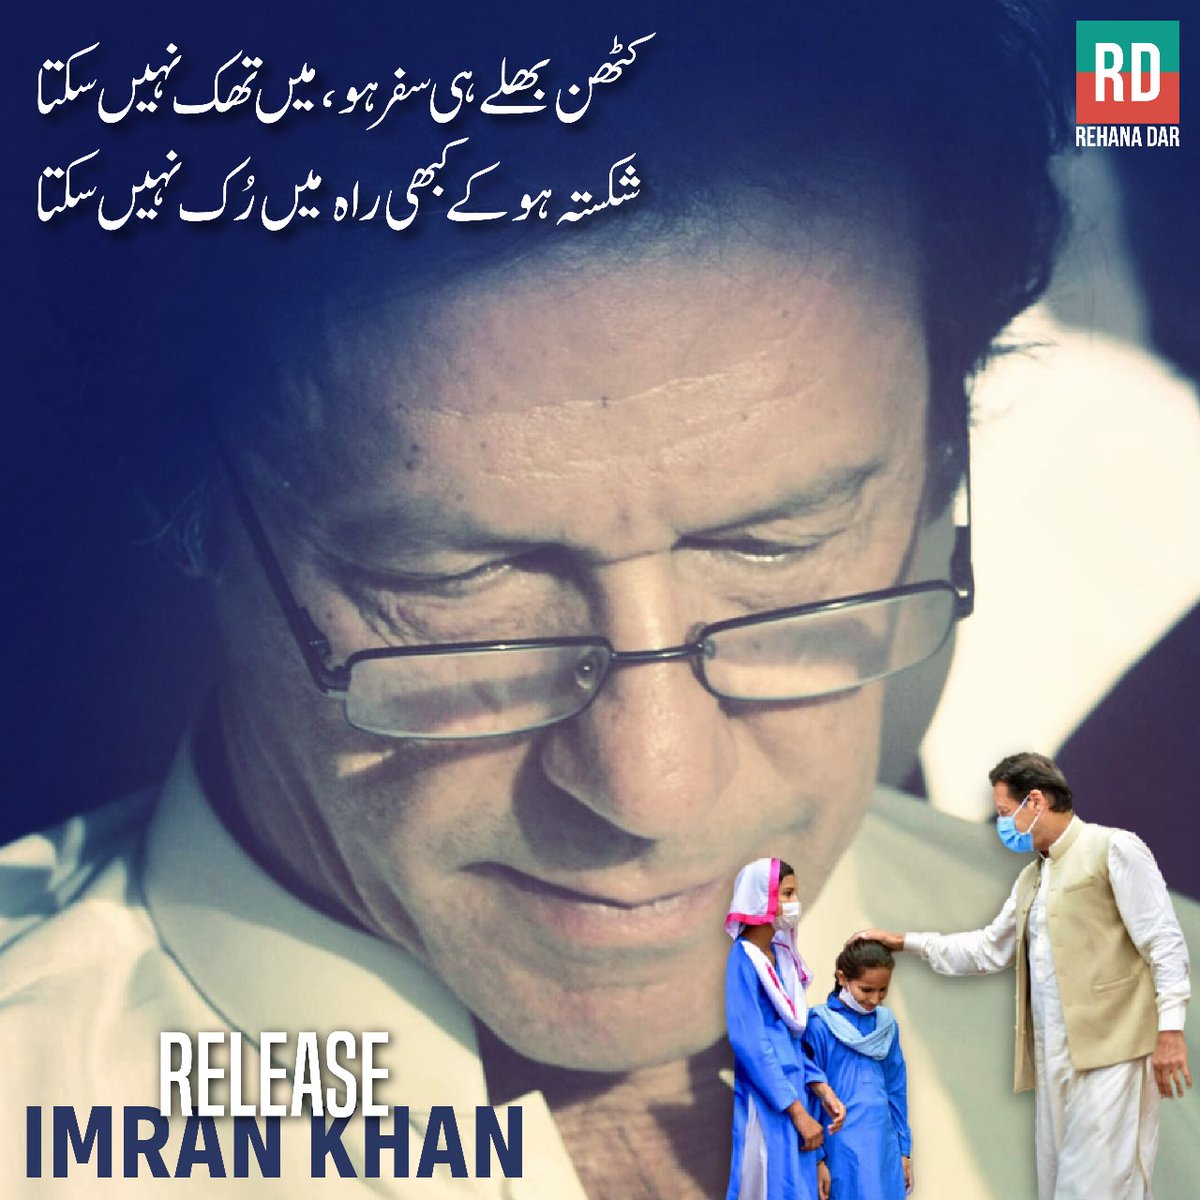 پاکستان کے عوام کے حقیقی لیڈر عمران خان کی بھونڈے کیسز میں گرفتاری کو کئی ماہ گزر چکے ہیں۔ میرا پوری قوم کے توسط سے حکومت اور متعلقہ حکام سے مطالبہ ہے کہ عمران خان پر بنائے گئے بھونڈے مقدمات کو ختم کر کے انھیں فی الفور رہا کیا جائے۔ #ReleaseOurKaptaan